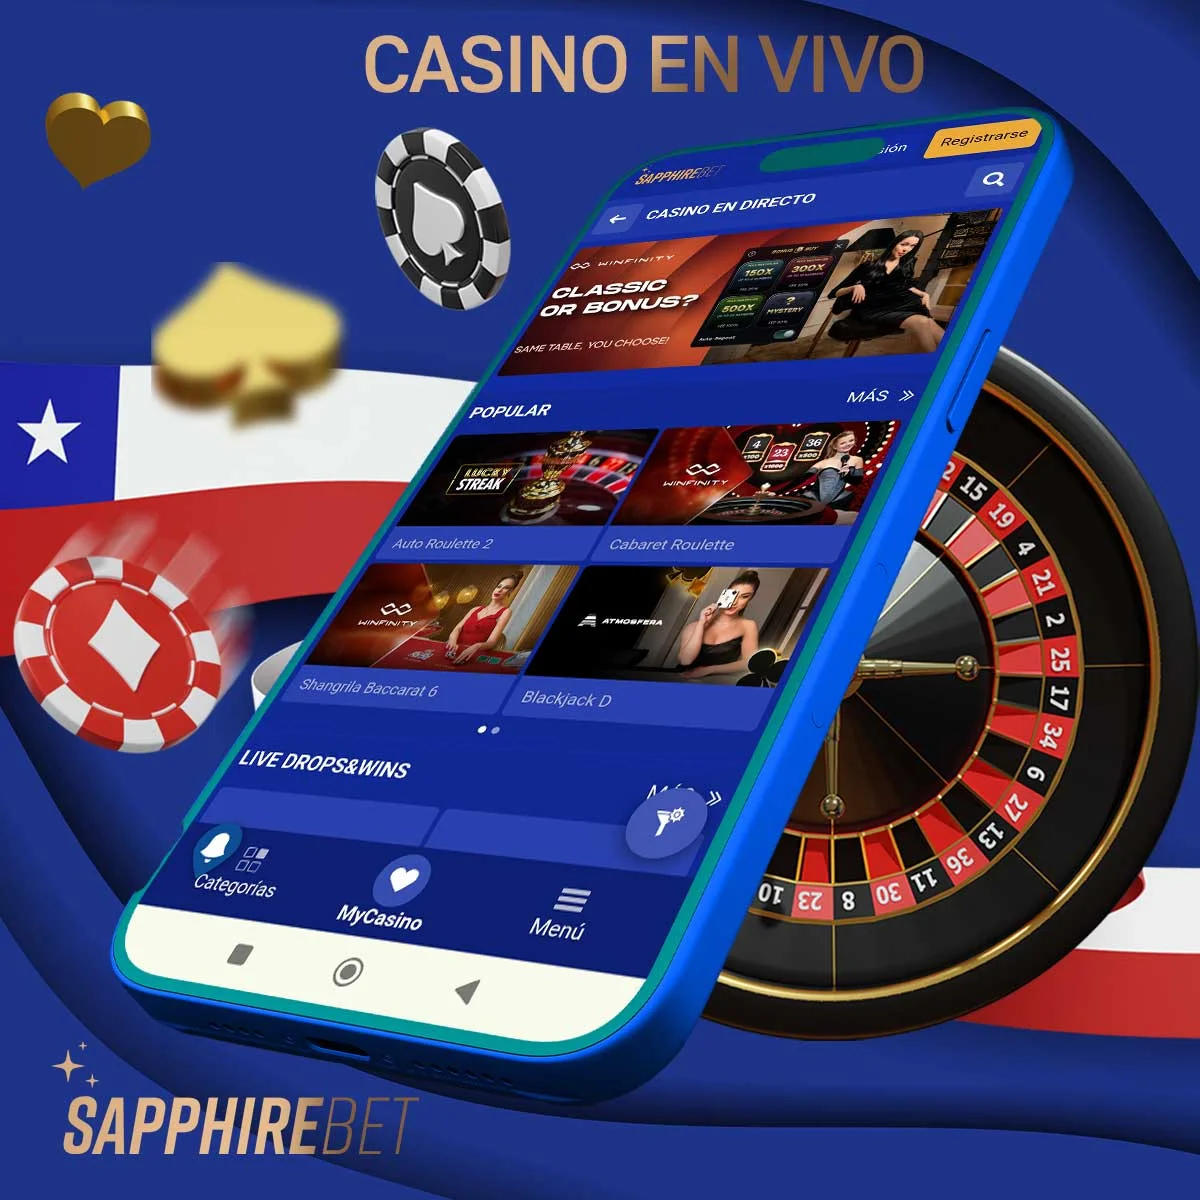 Reseña de los juegos de casino en vivo de Sapphirebet